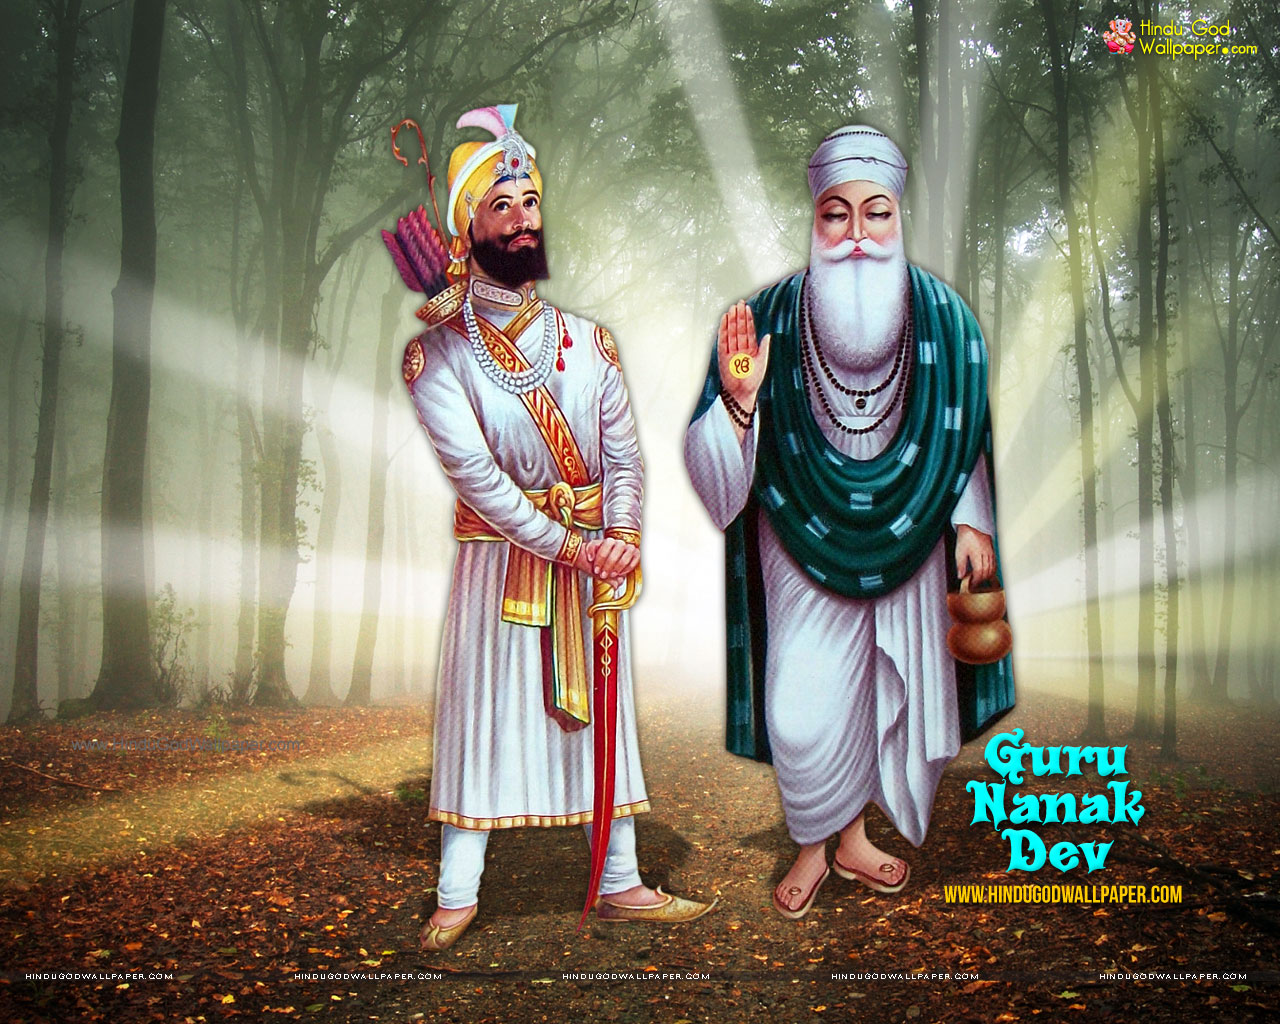 Guru Nanak Dev Ji Best - 1280x1024 Wallpaper 